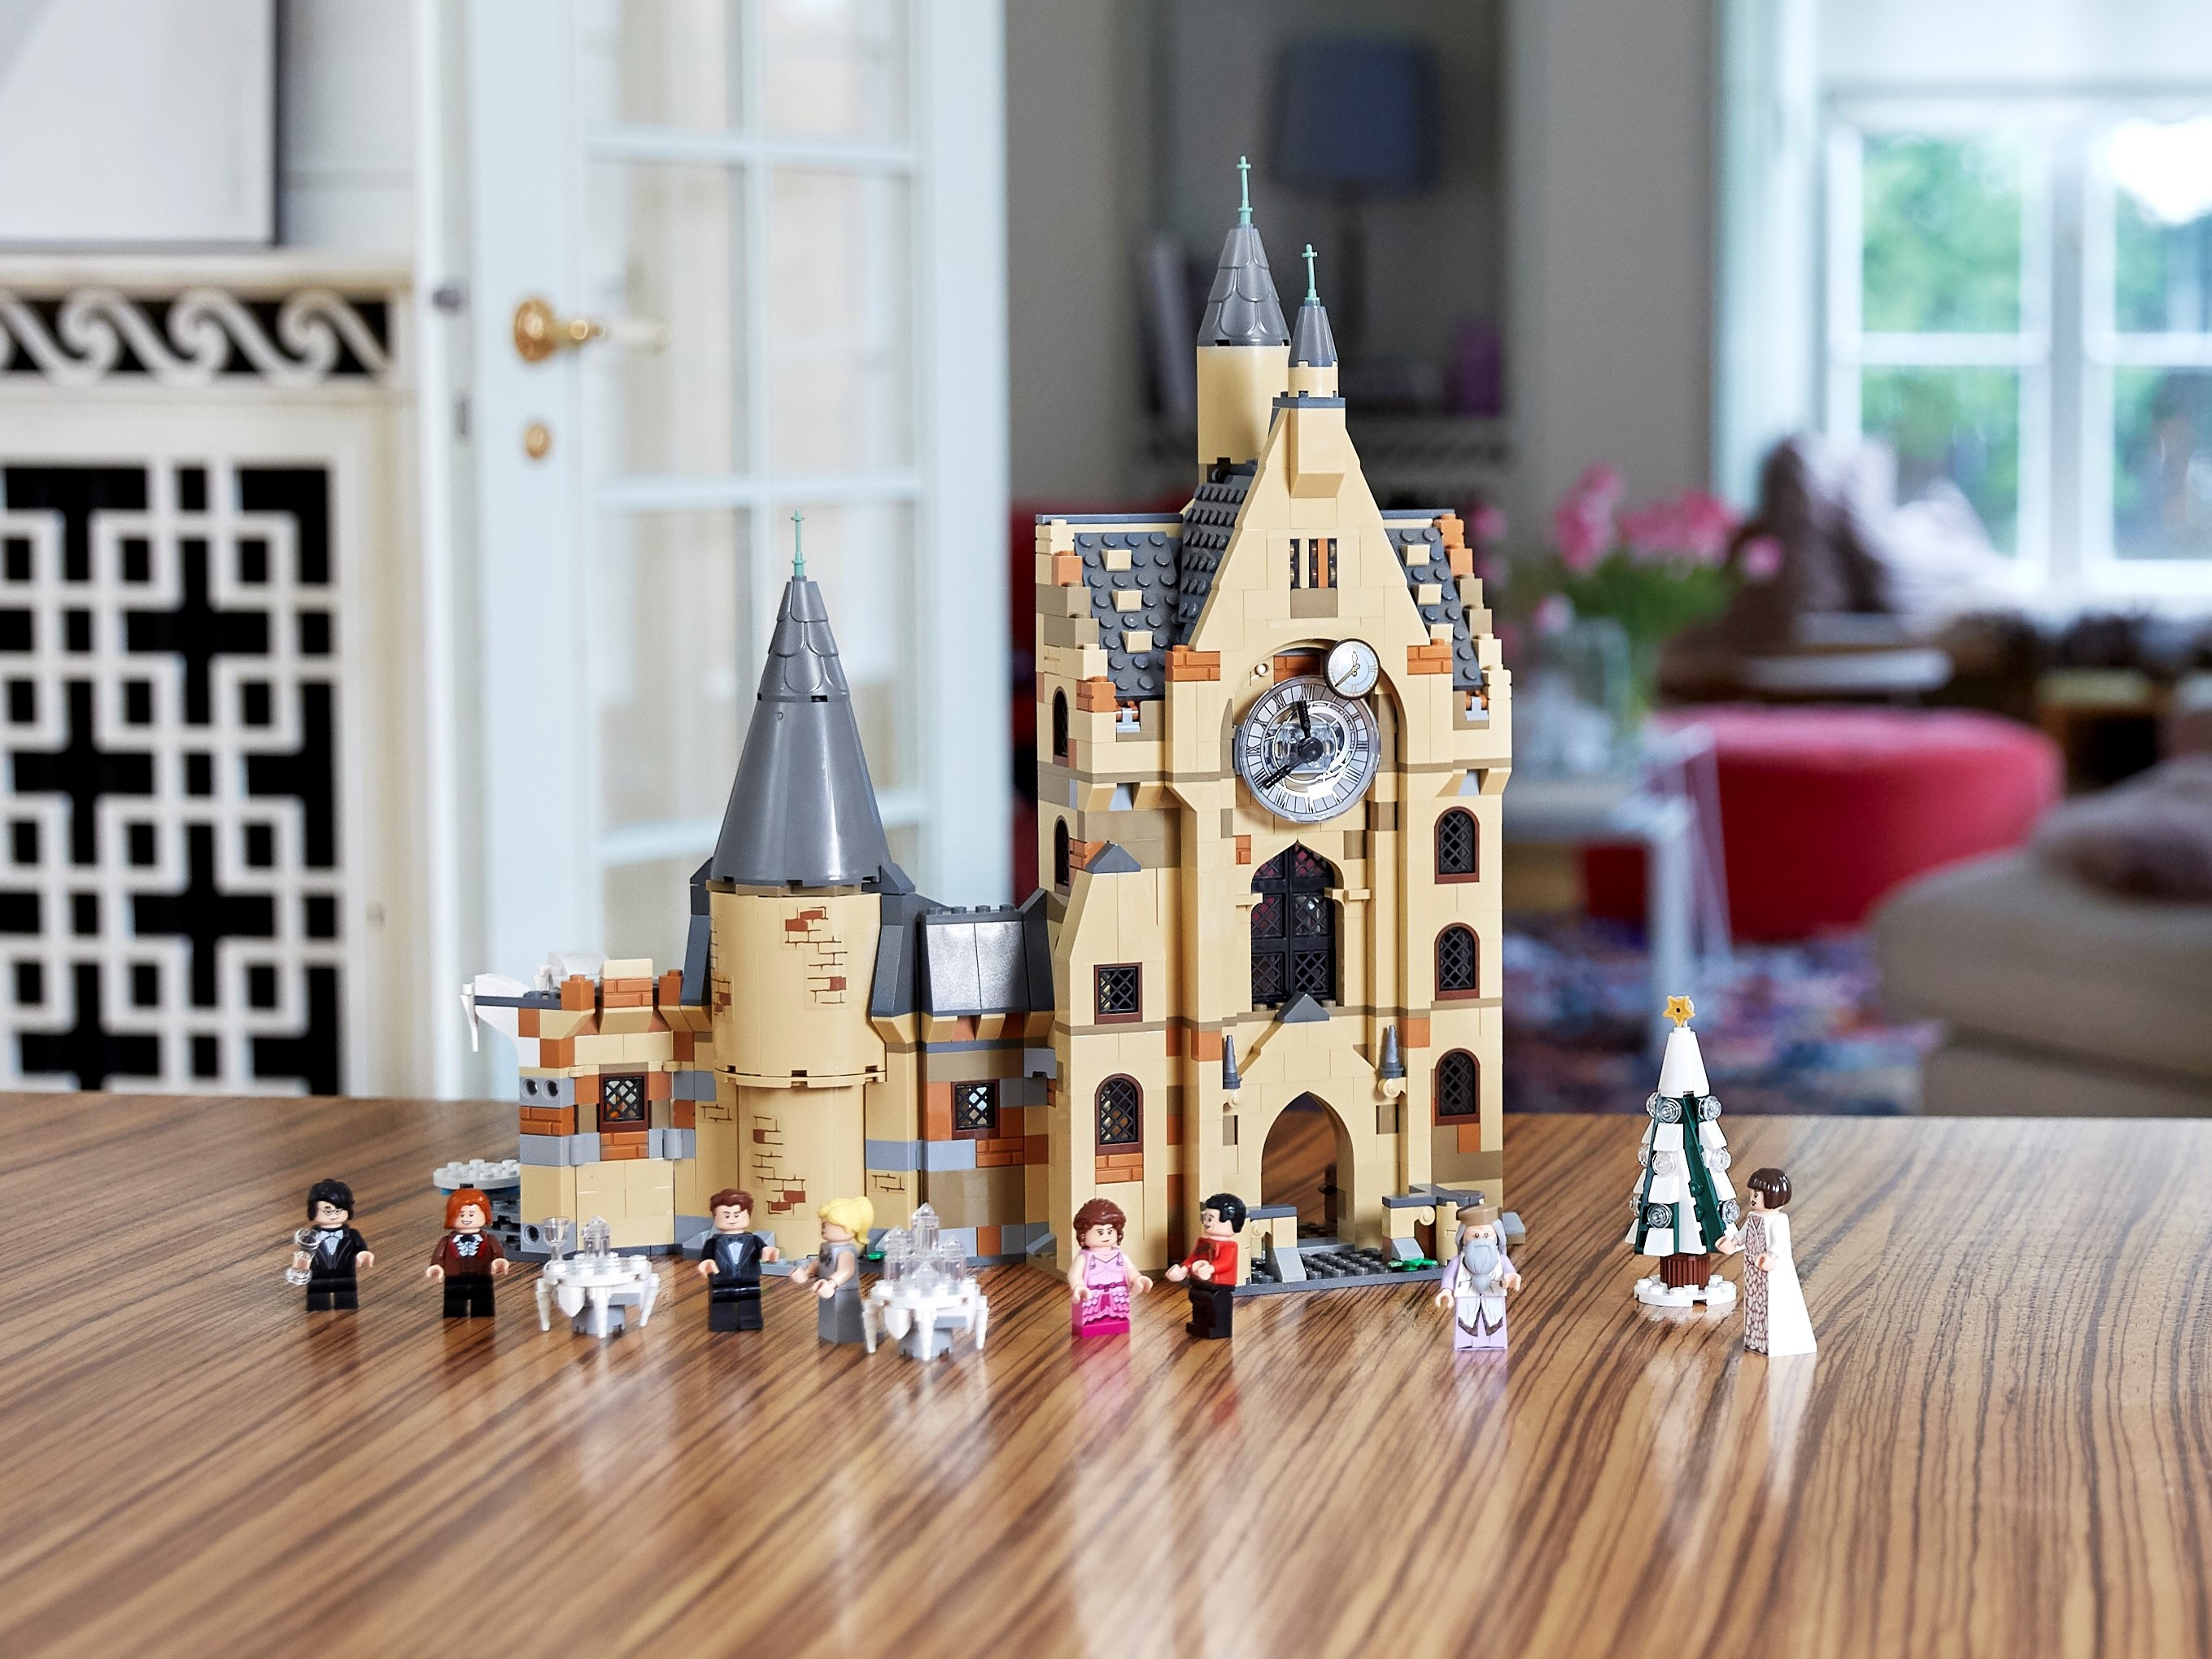 Lego - 75948 - Harry Potter - La tour de l'horloge